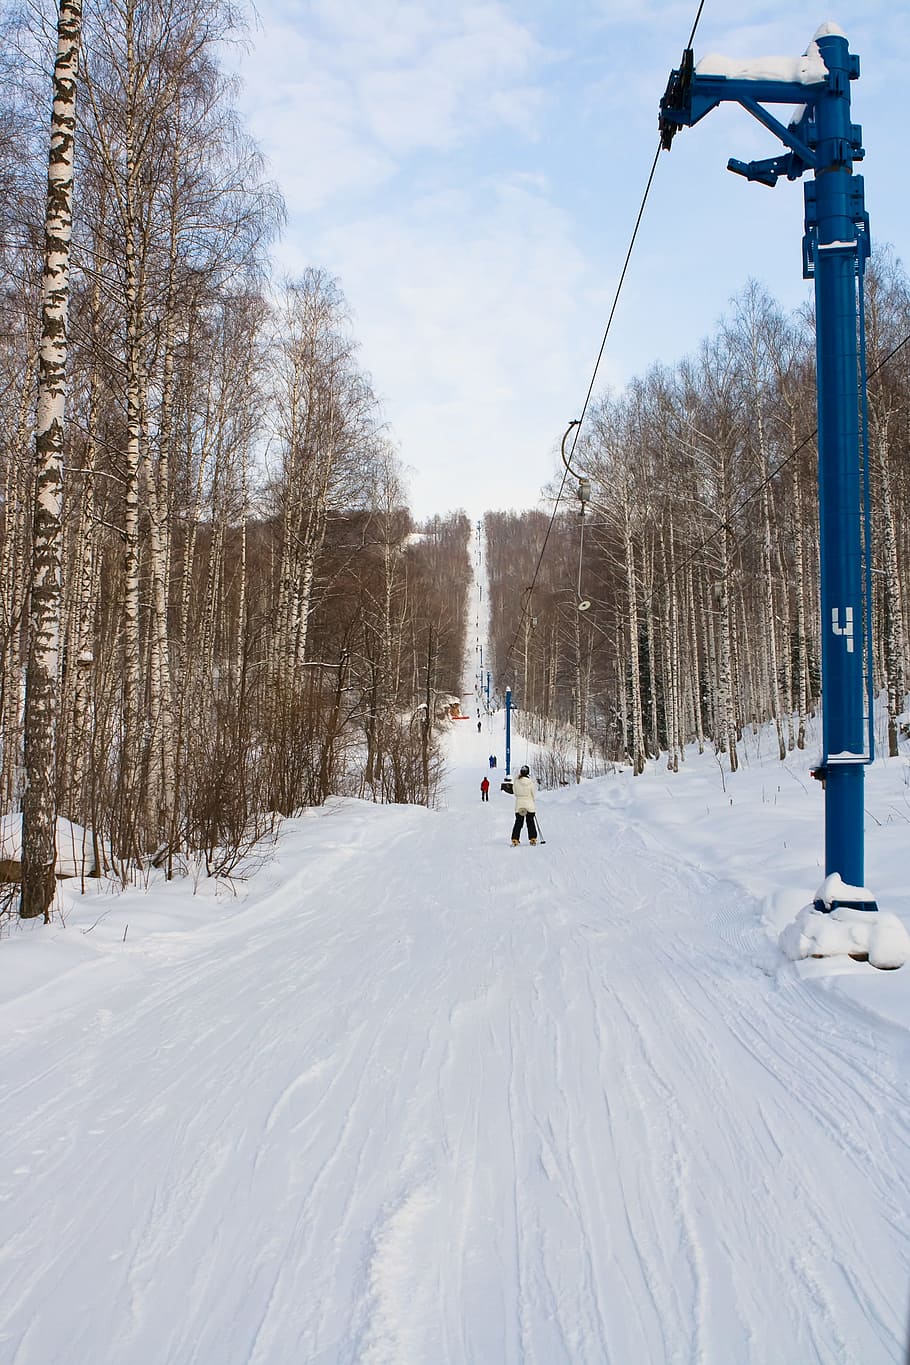 esqui, inverno, neve, declive, pessoas, esquiadores, esporte, temperatura fria, árvore, natureza